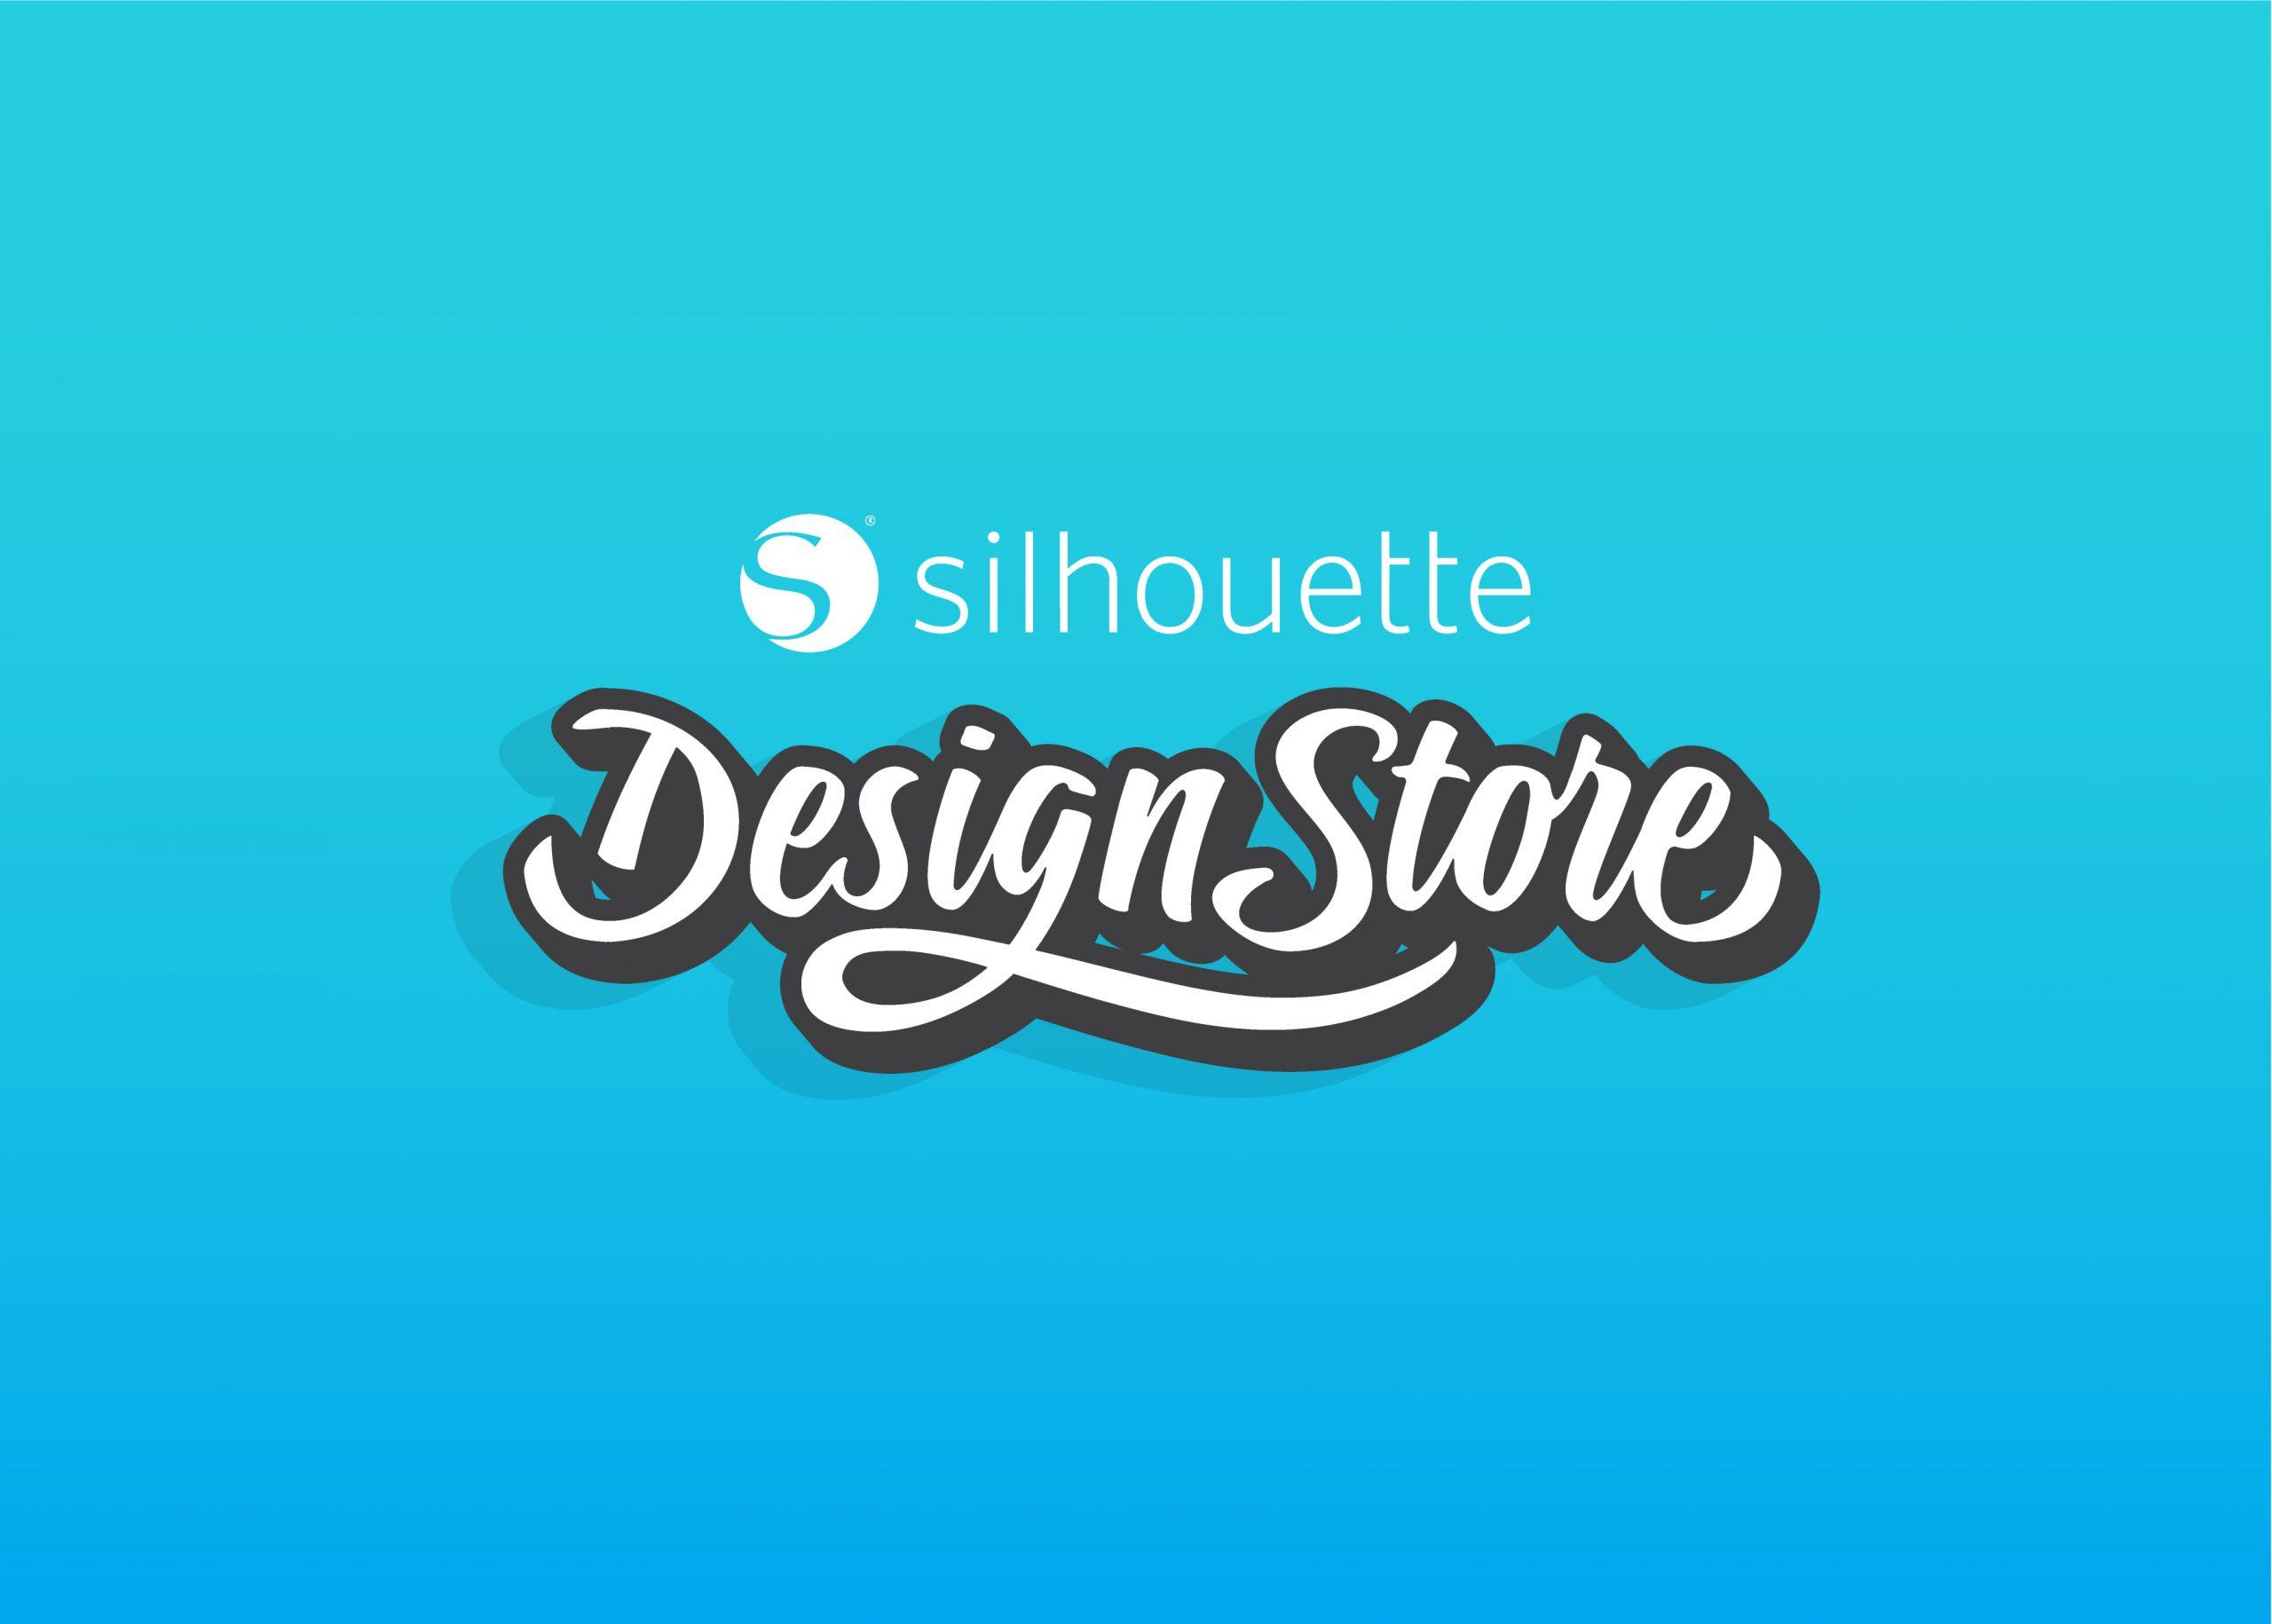 Silhouette-design-store-logo